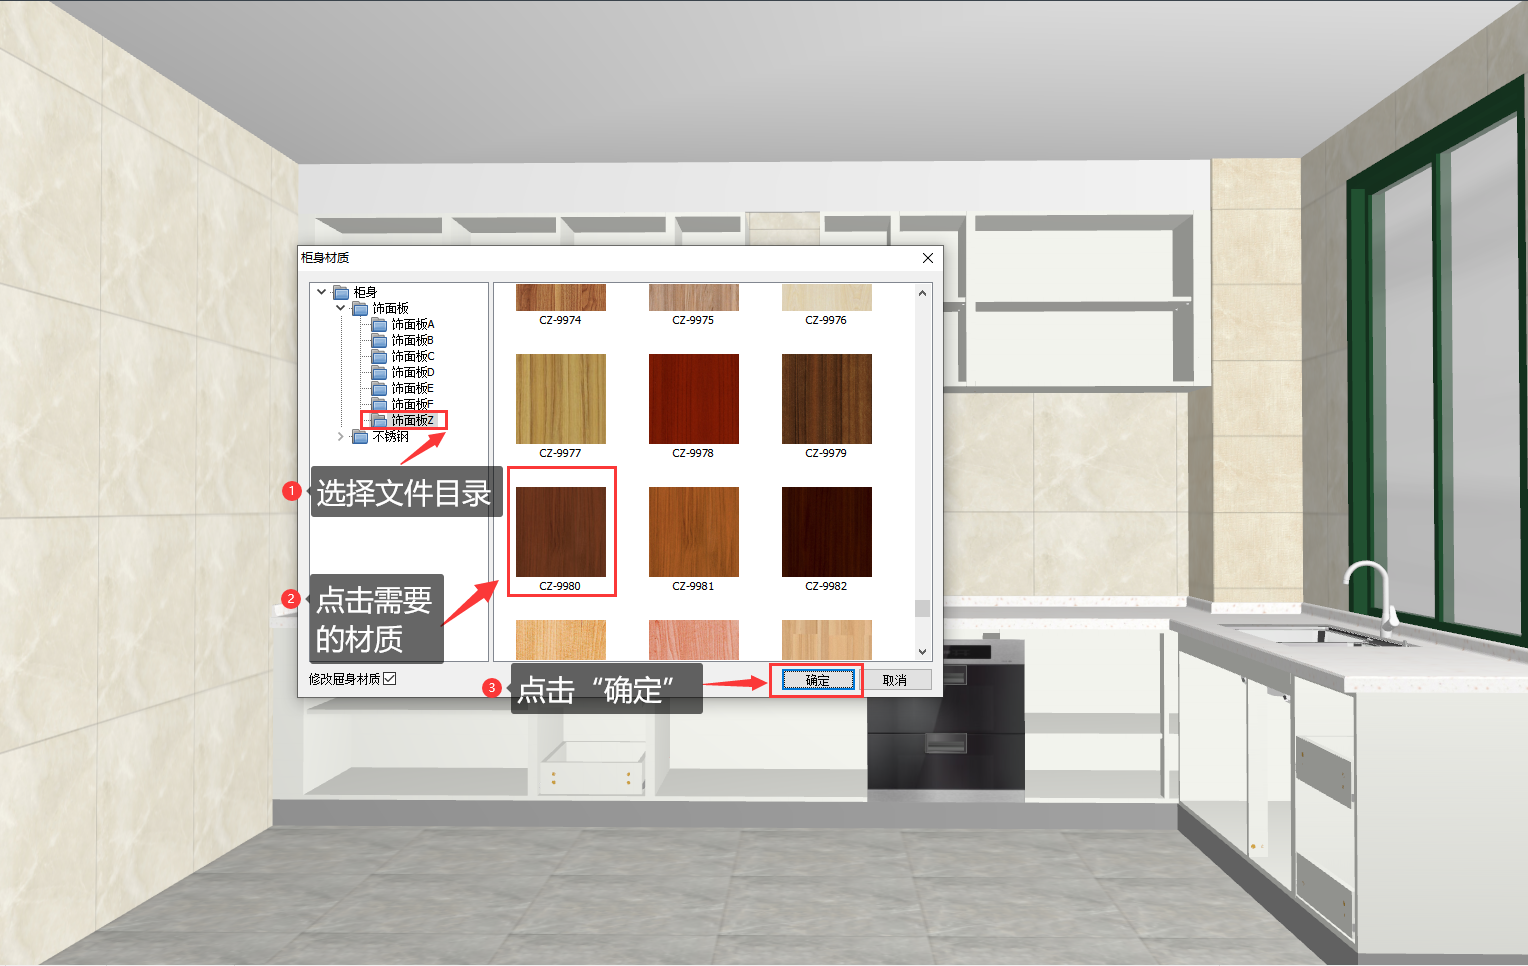 柜体材质设置 - 定制橱柜图文 - 衣柜软件_衣柜设计|橱柜设计软件-广州市宏光软件科技有限公司